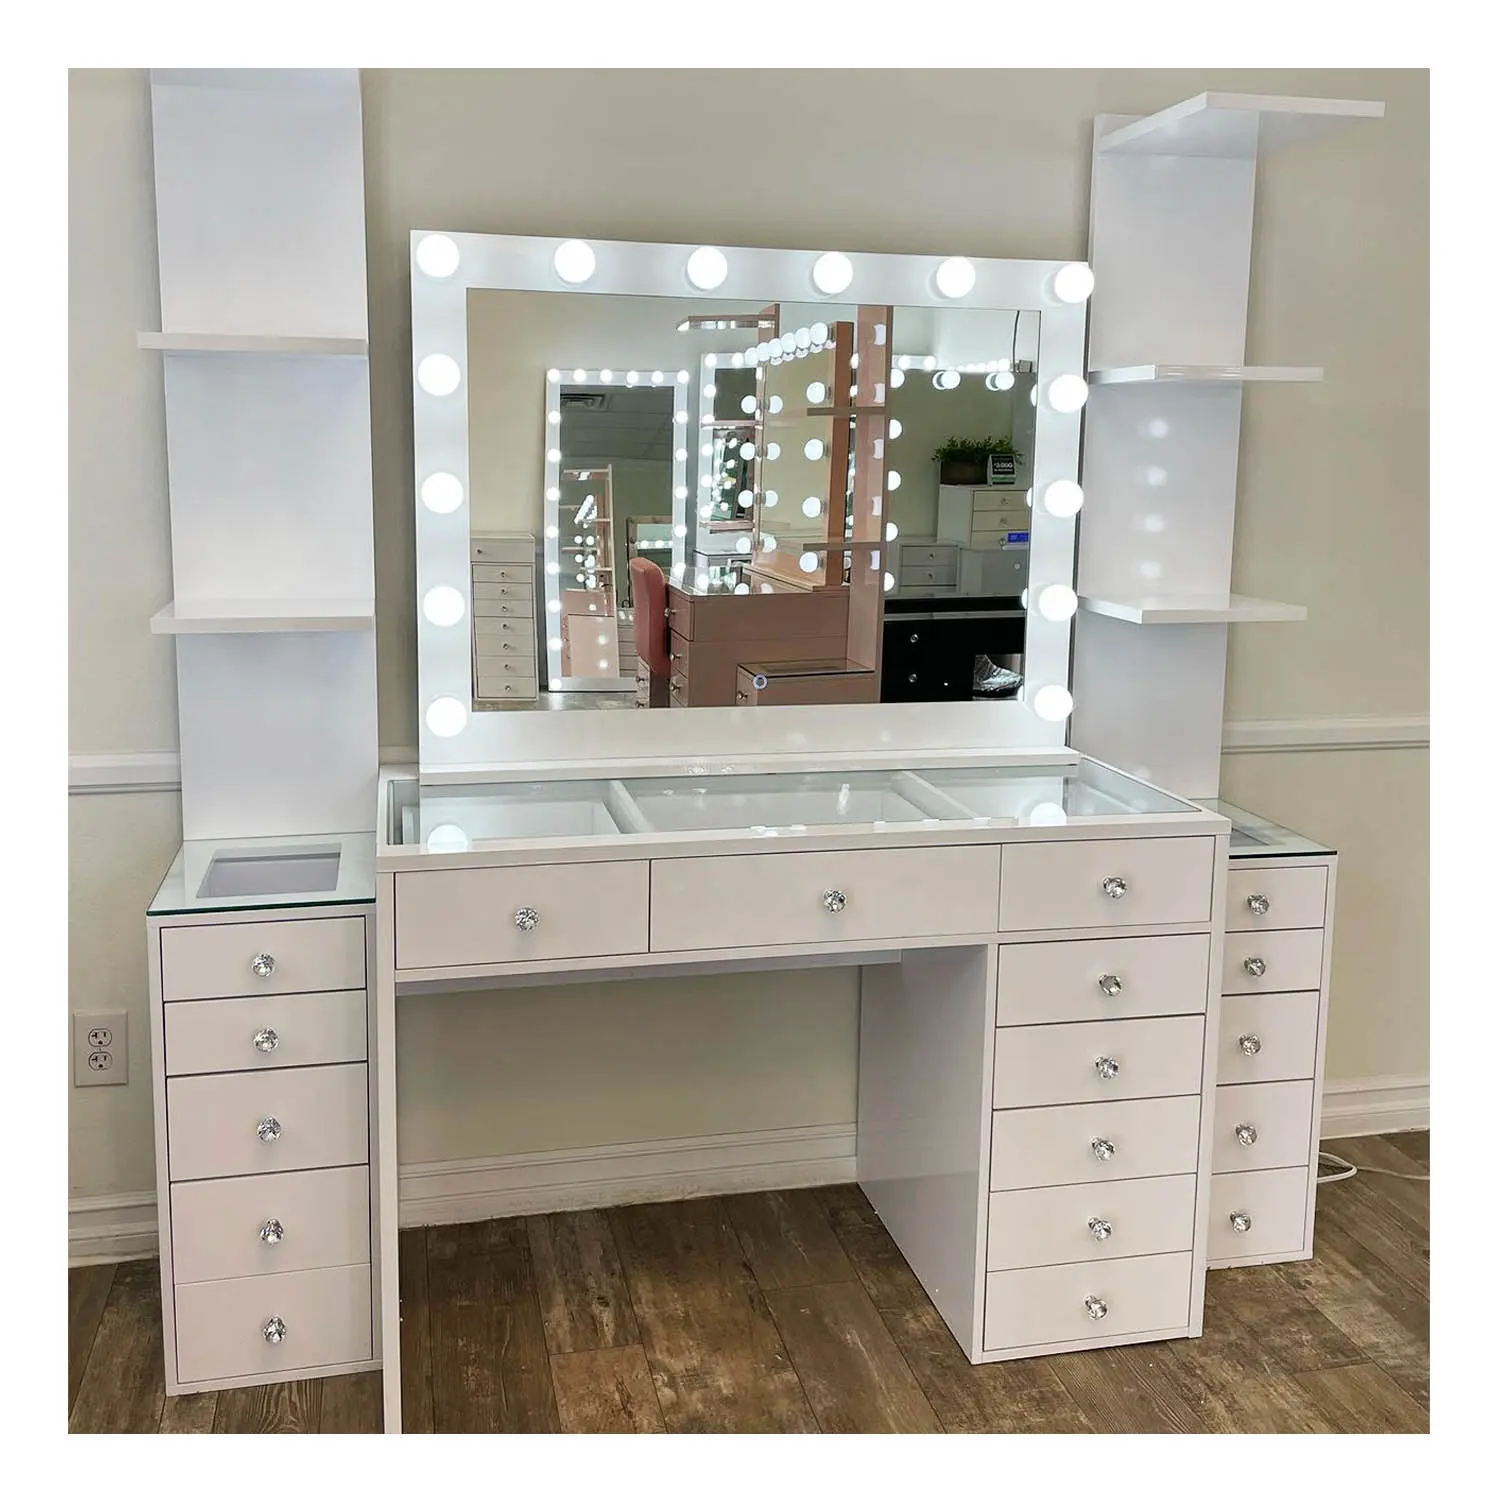 Thiết kế hiện đại Vanity tủ quần áo ngăn kéo phòng ngủ lớn màu trắng Vanity bảng với ngăn kéo đa chức năng trang điểm Vanity